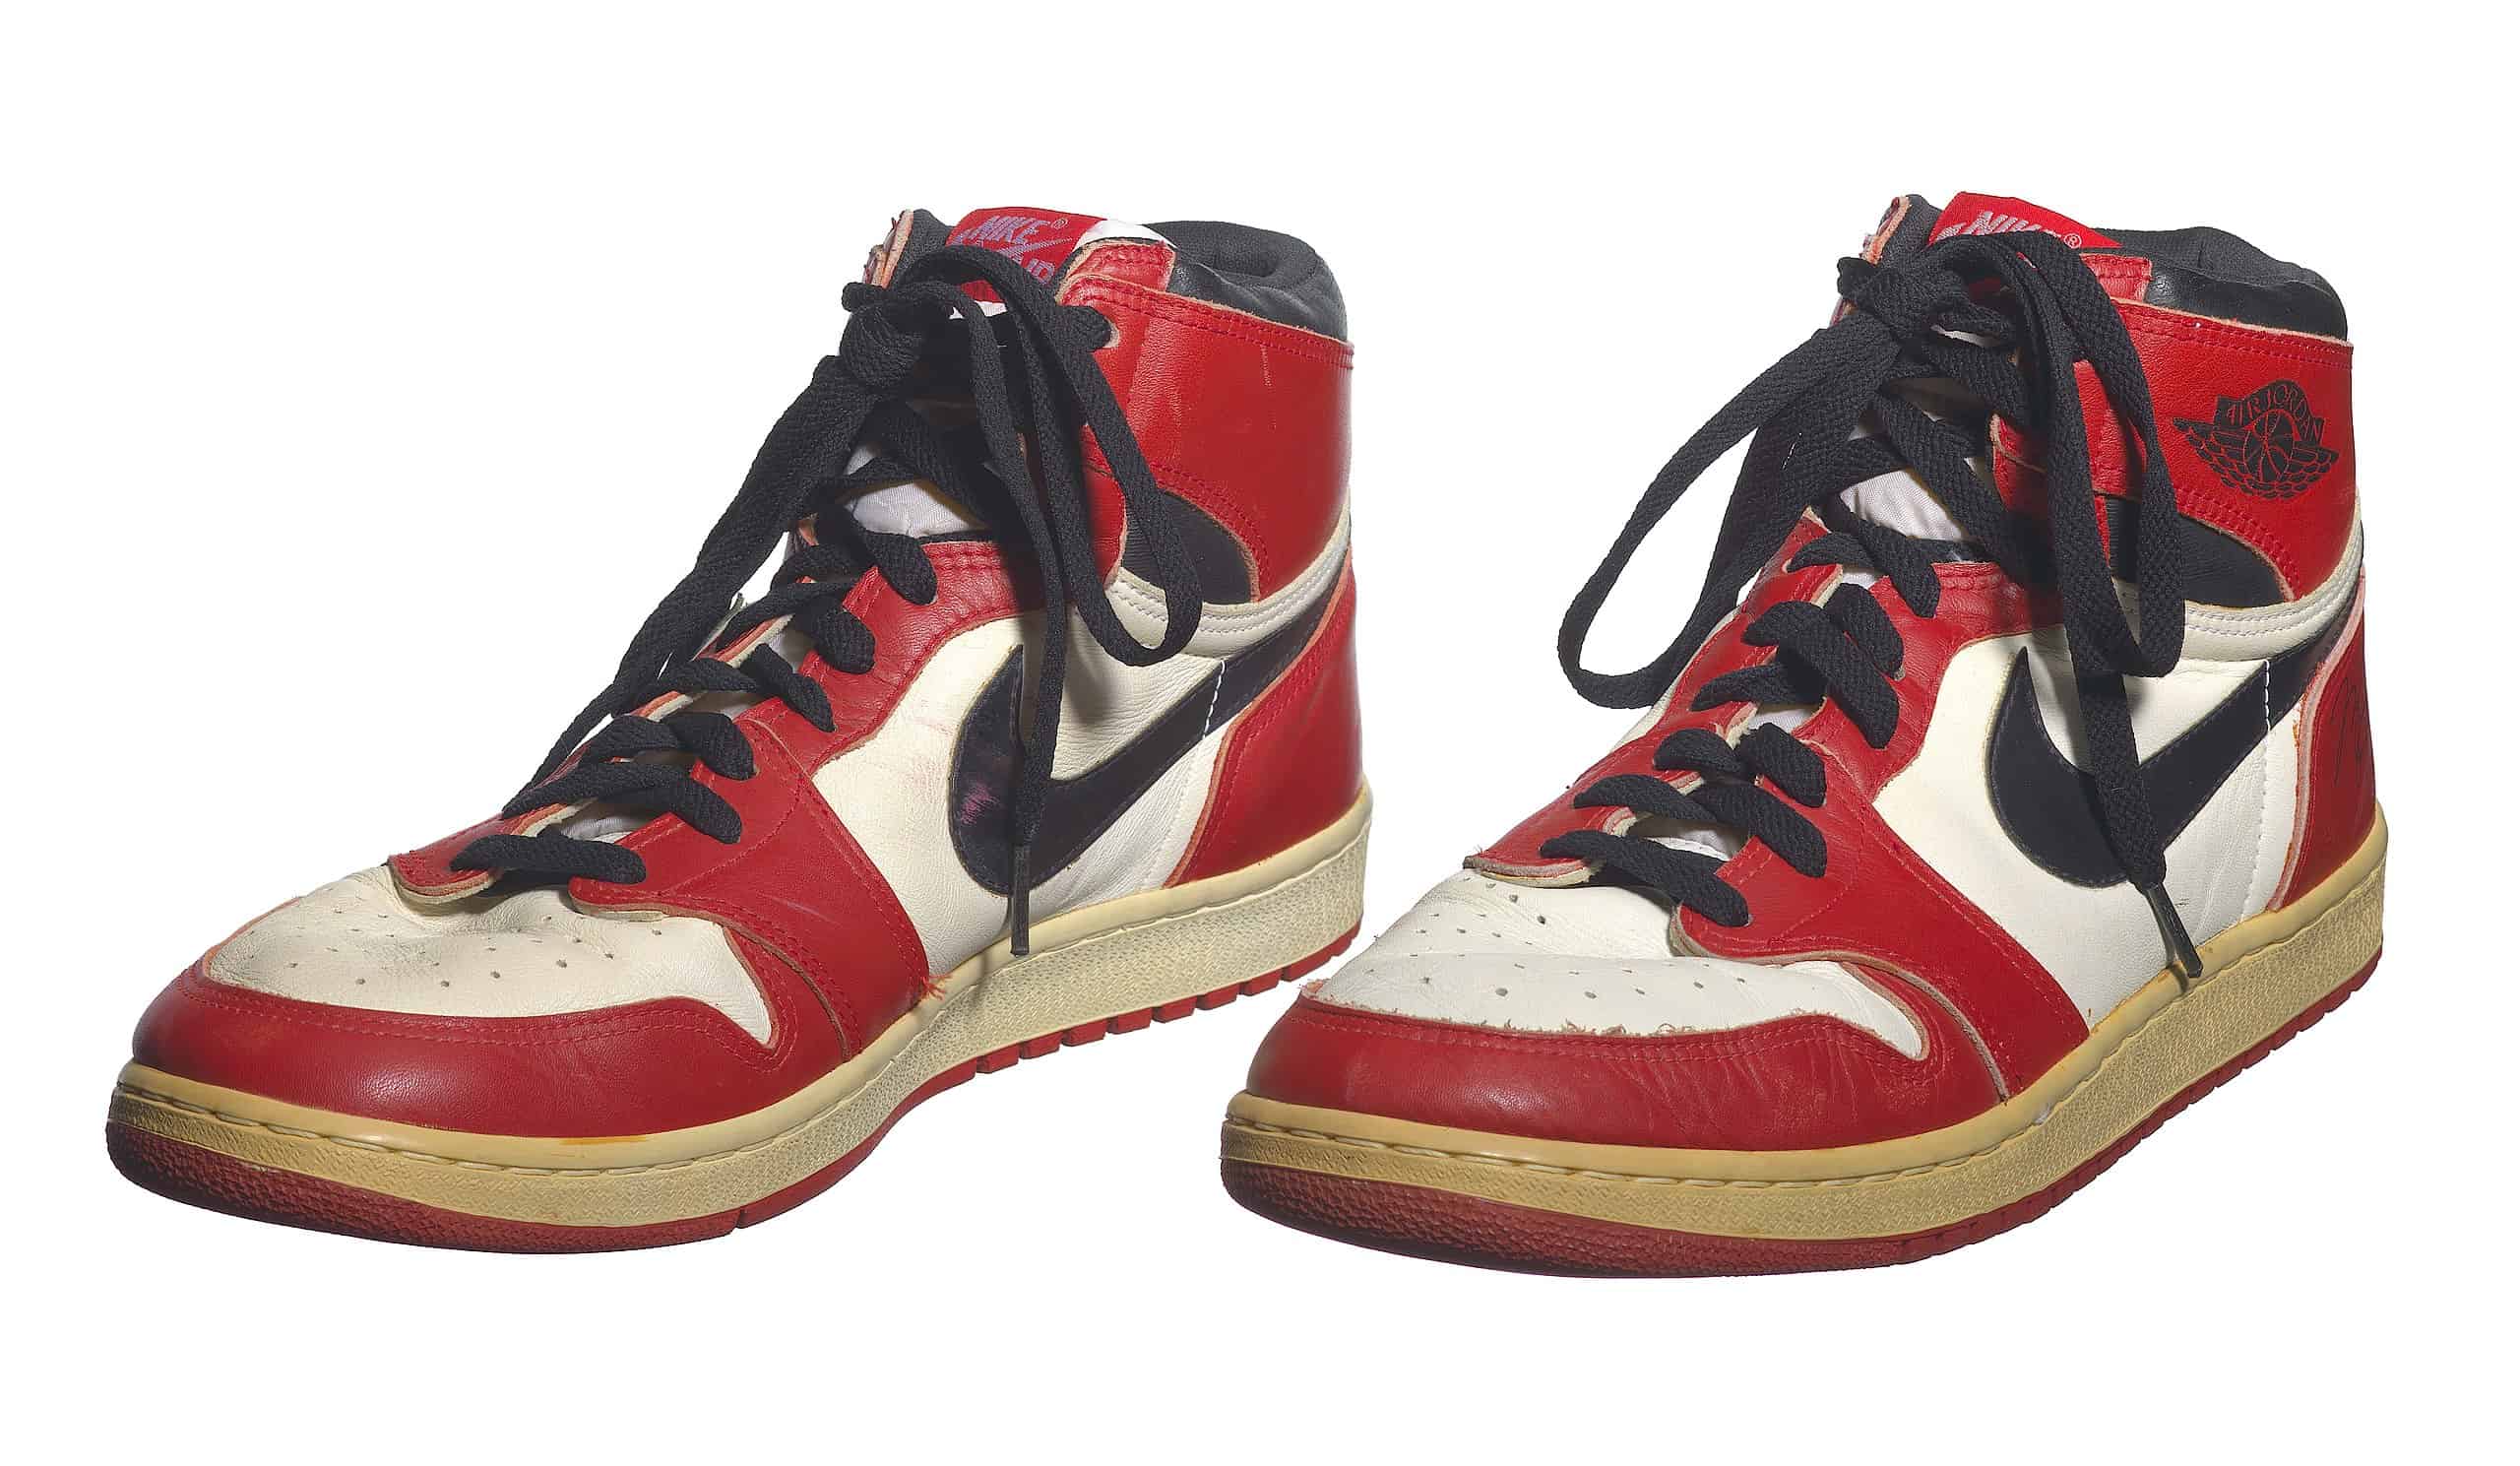 Michael Jordan's game-worn Air Jordan 1s